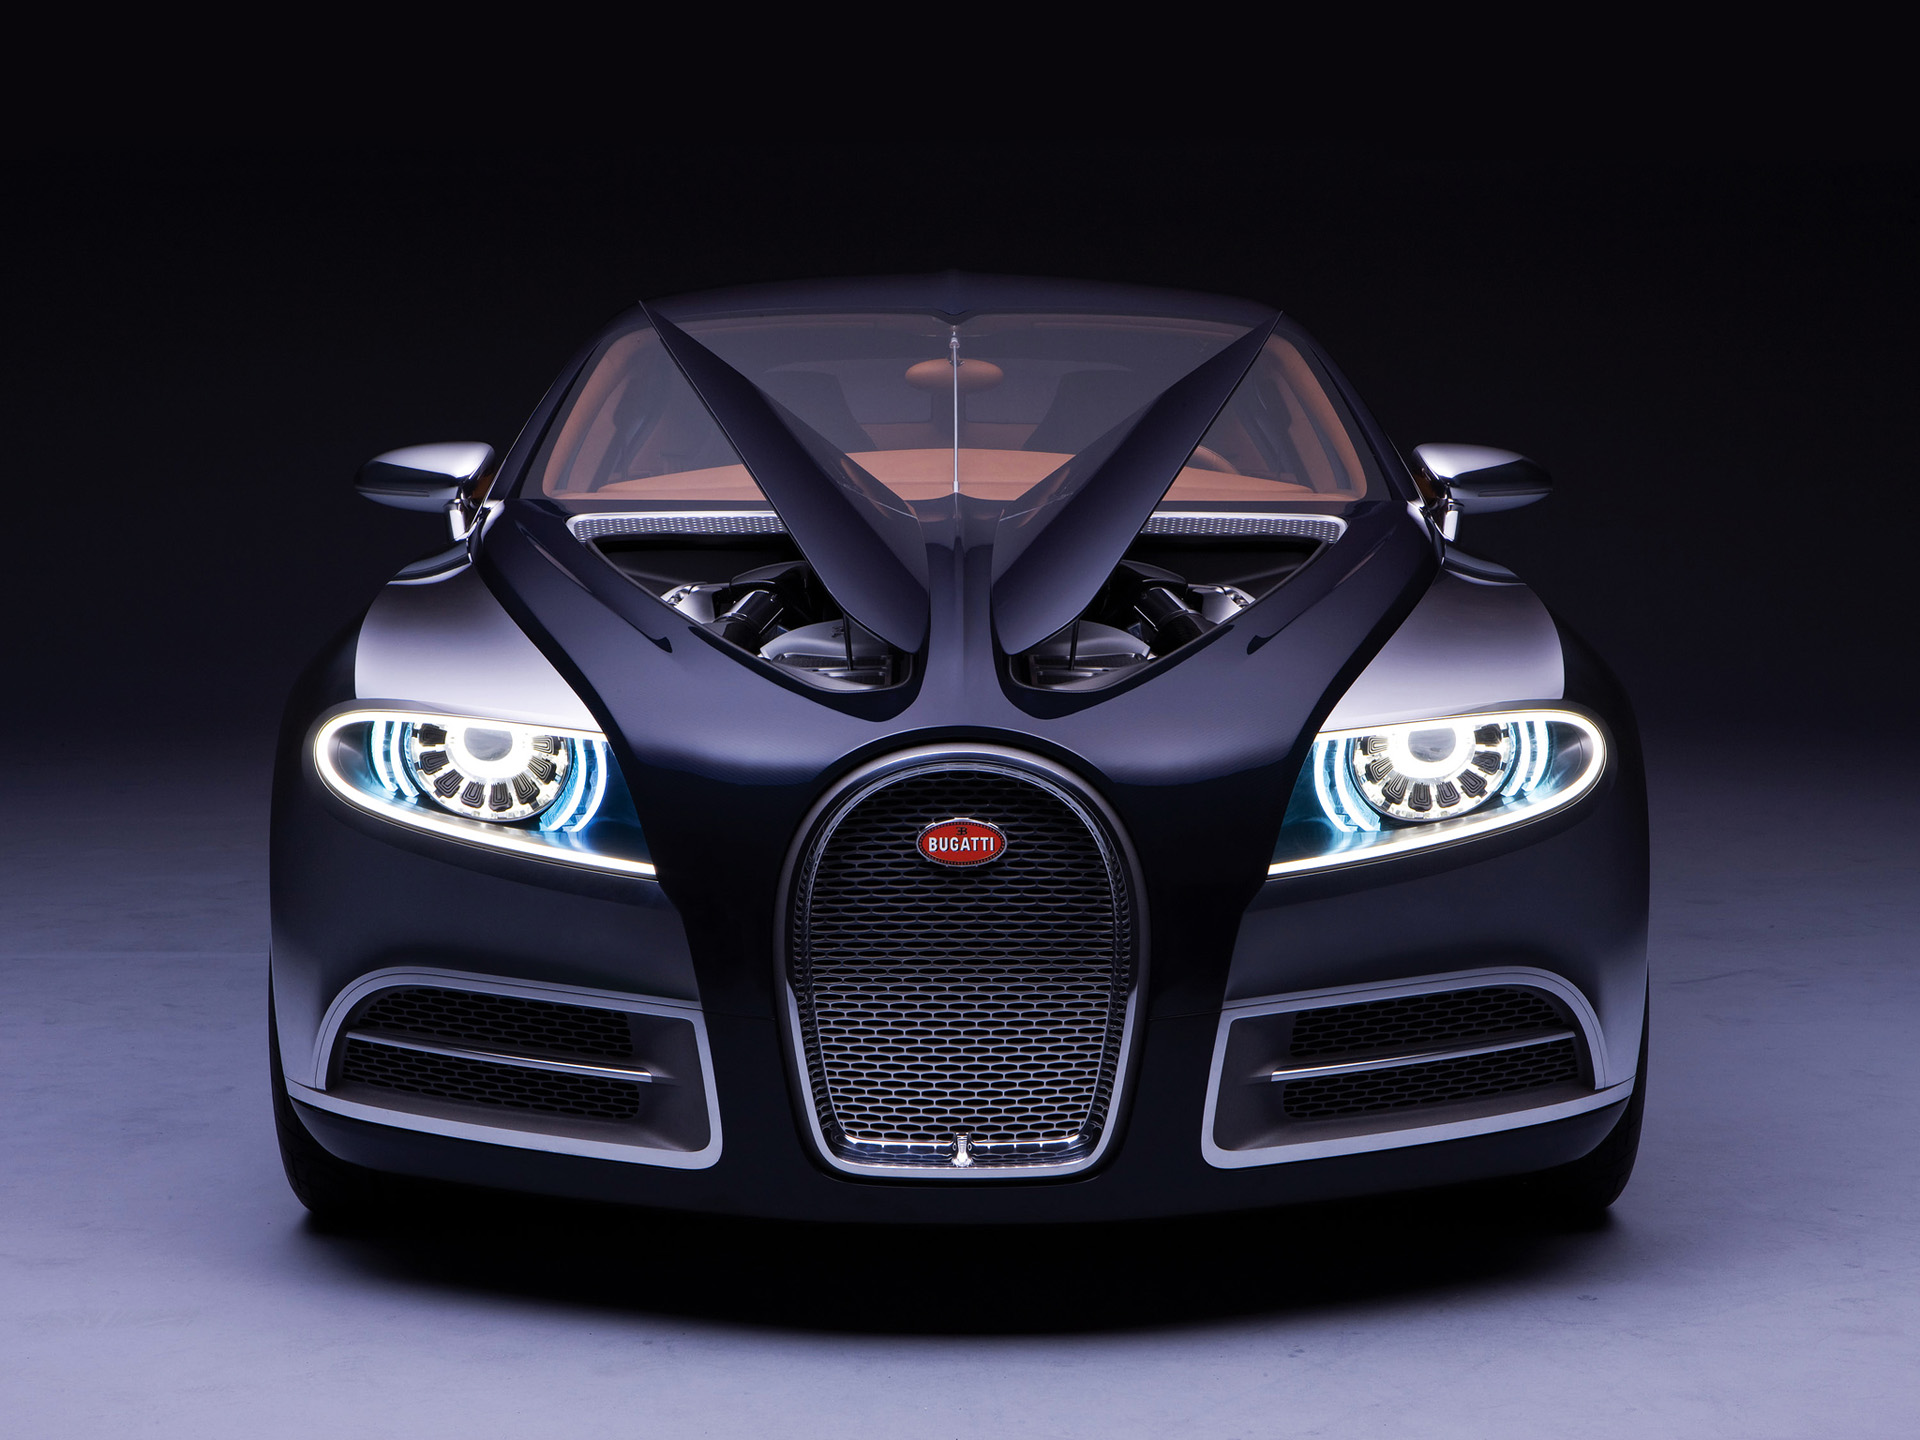  2009 Bugatti 16C Galibier Concept Wallpaper.